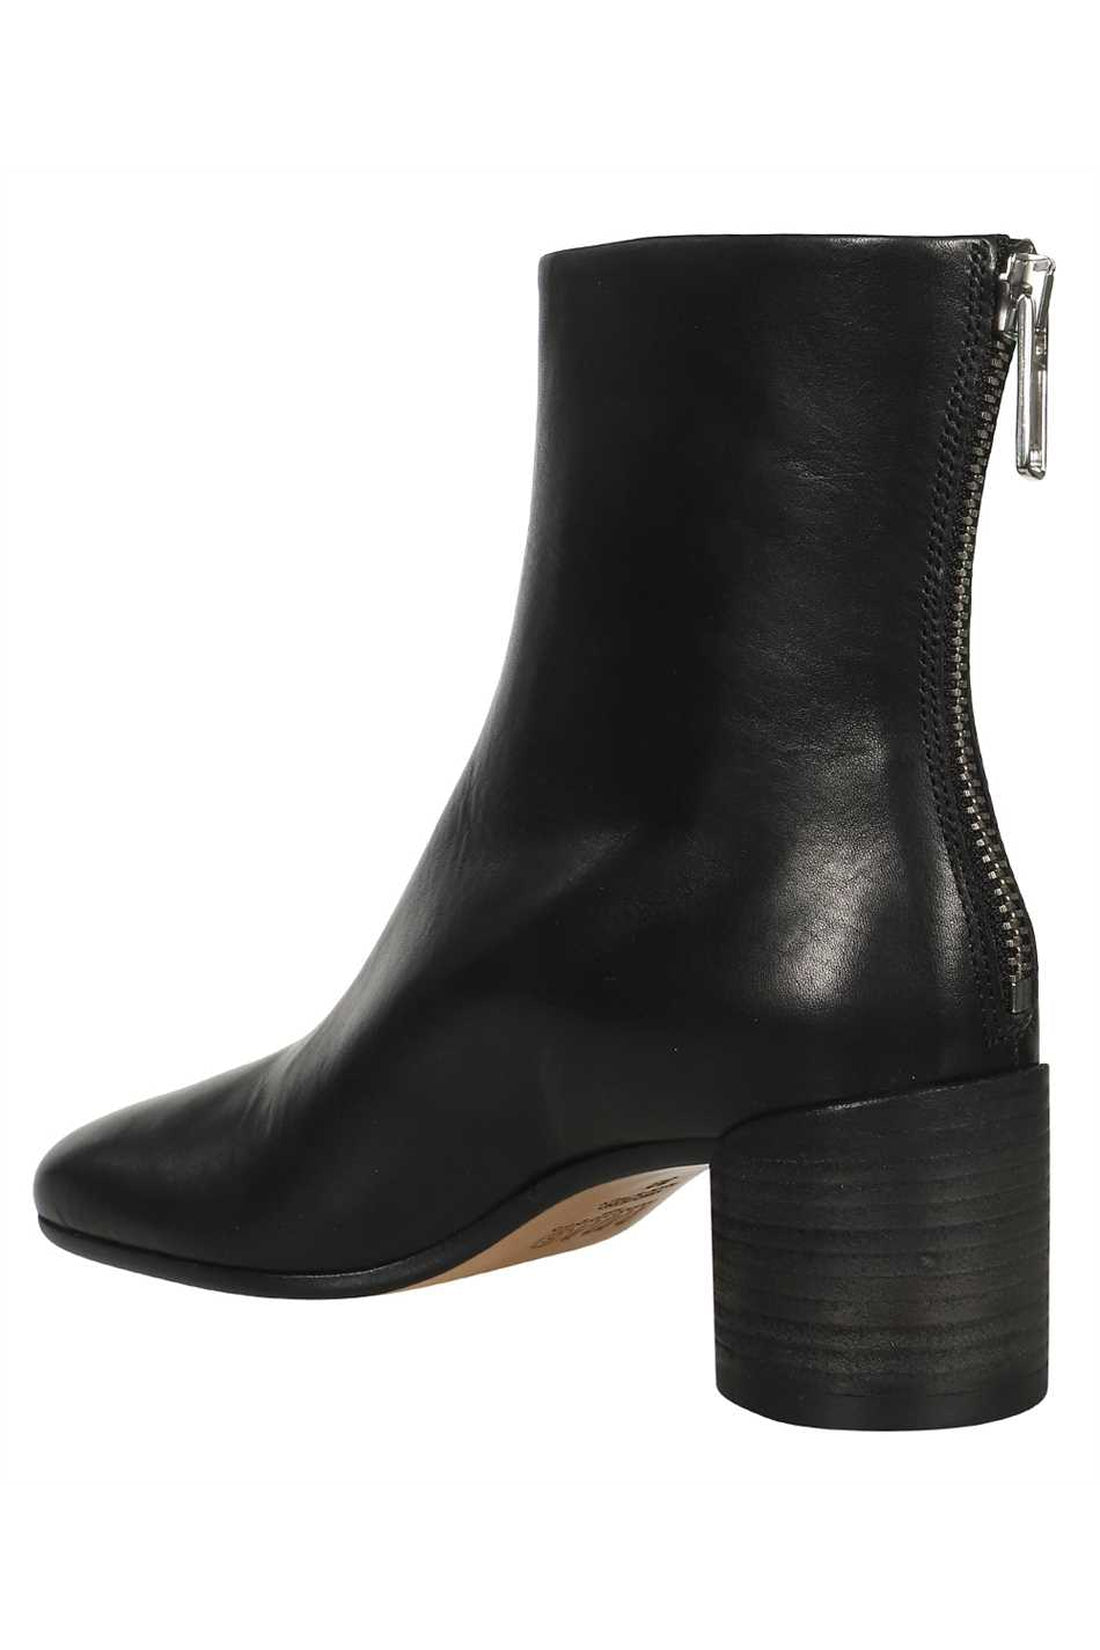 MM6 Maison Margiela-OUTLET-SALE-Leather ankle boots-ARCHIVIST